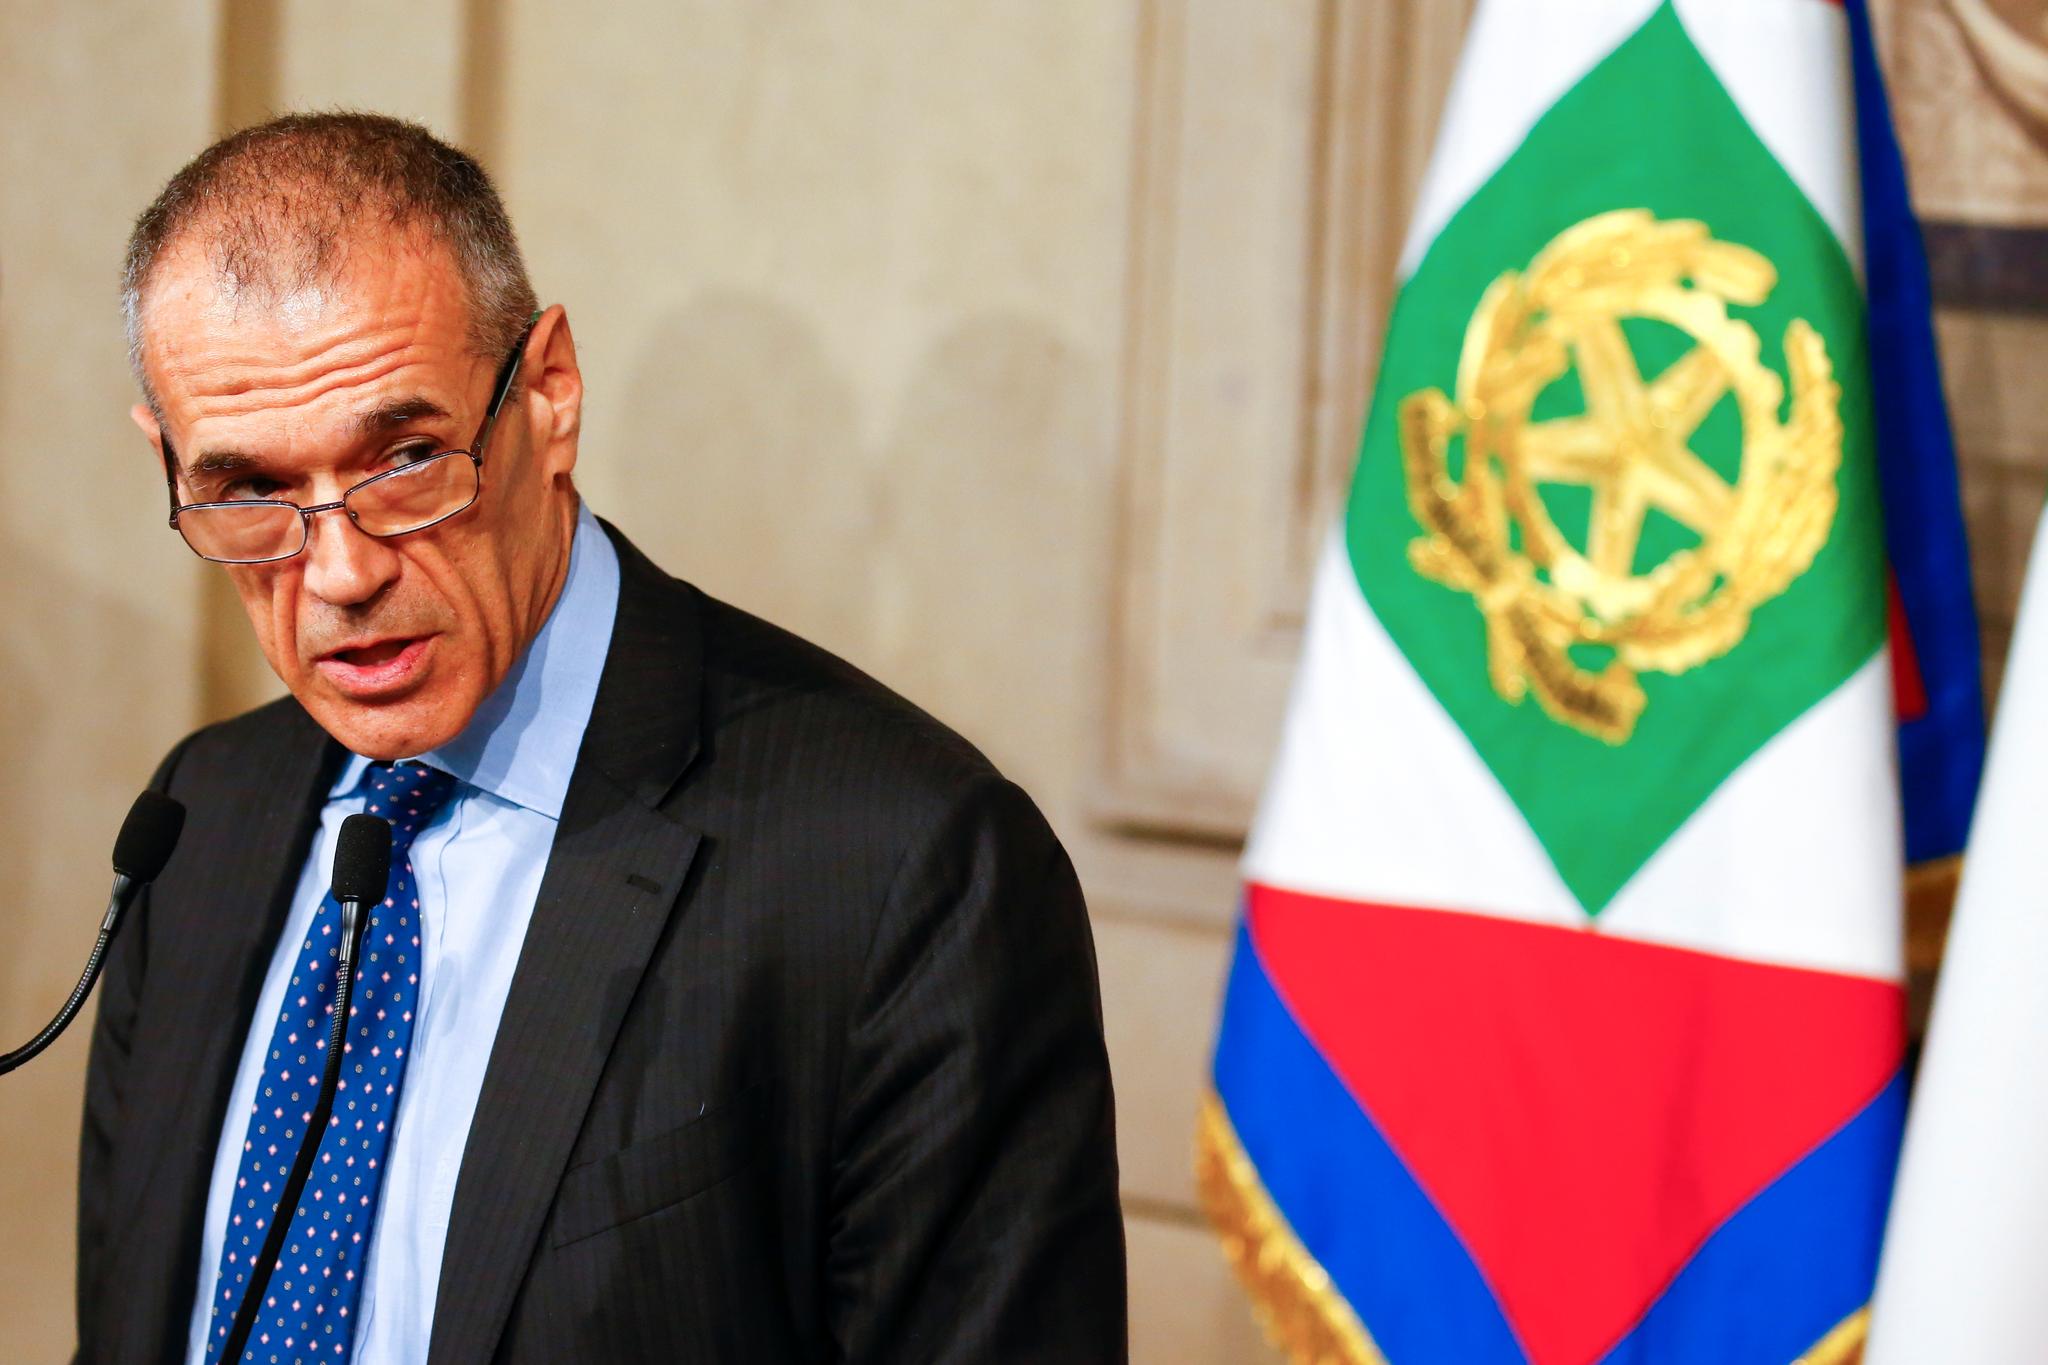 Carlo Cottarelli har bakgrunn fra Det internasjonale pengefondet IMF og skal nå lede Italias regjering i en overgangsperiode.